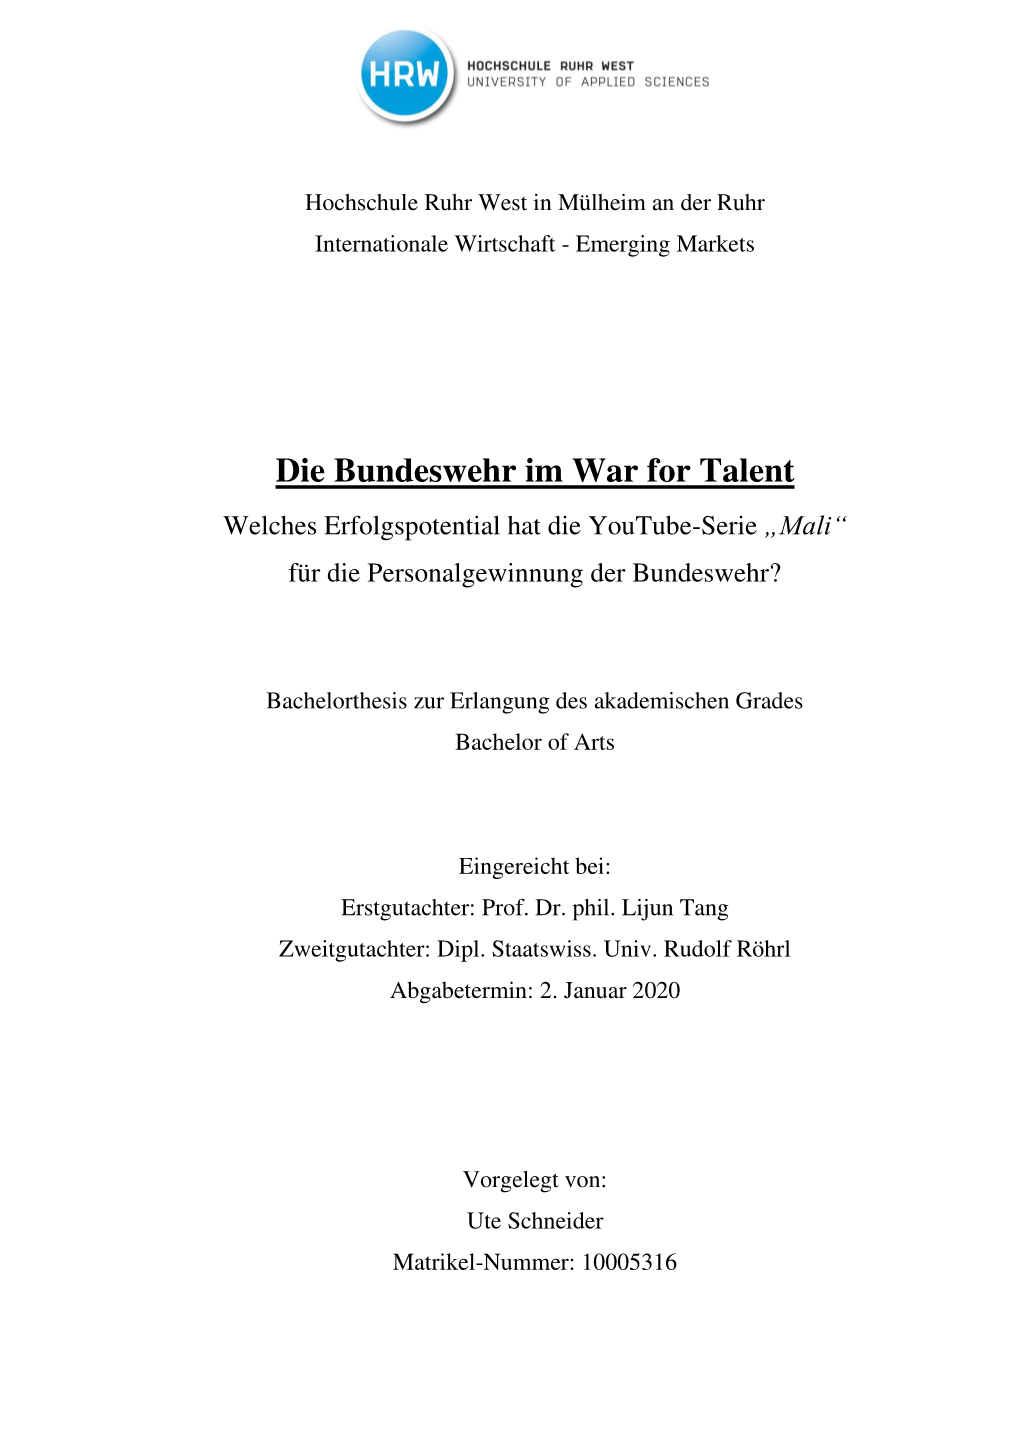 Die Bundeswehr Im War for Talent Welches Erfolgspotential Hat Die Youtube-Serie „Mali“ Für Die Personalgewinnung Der Bundeswehr?